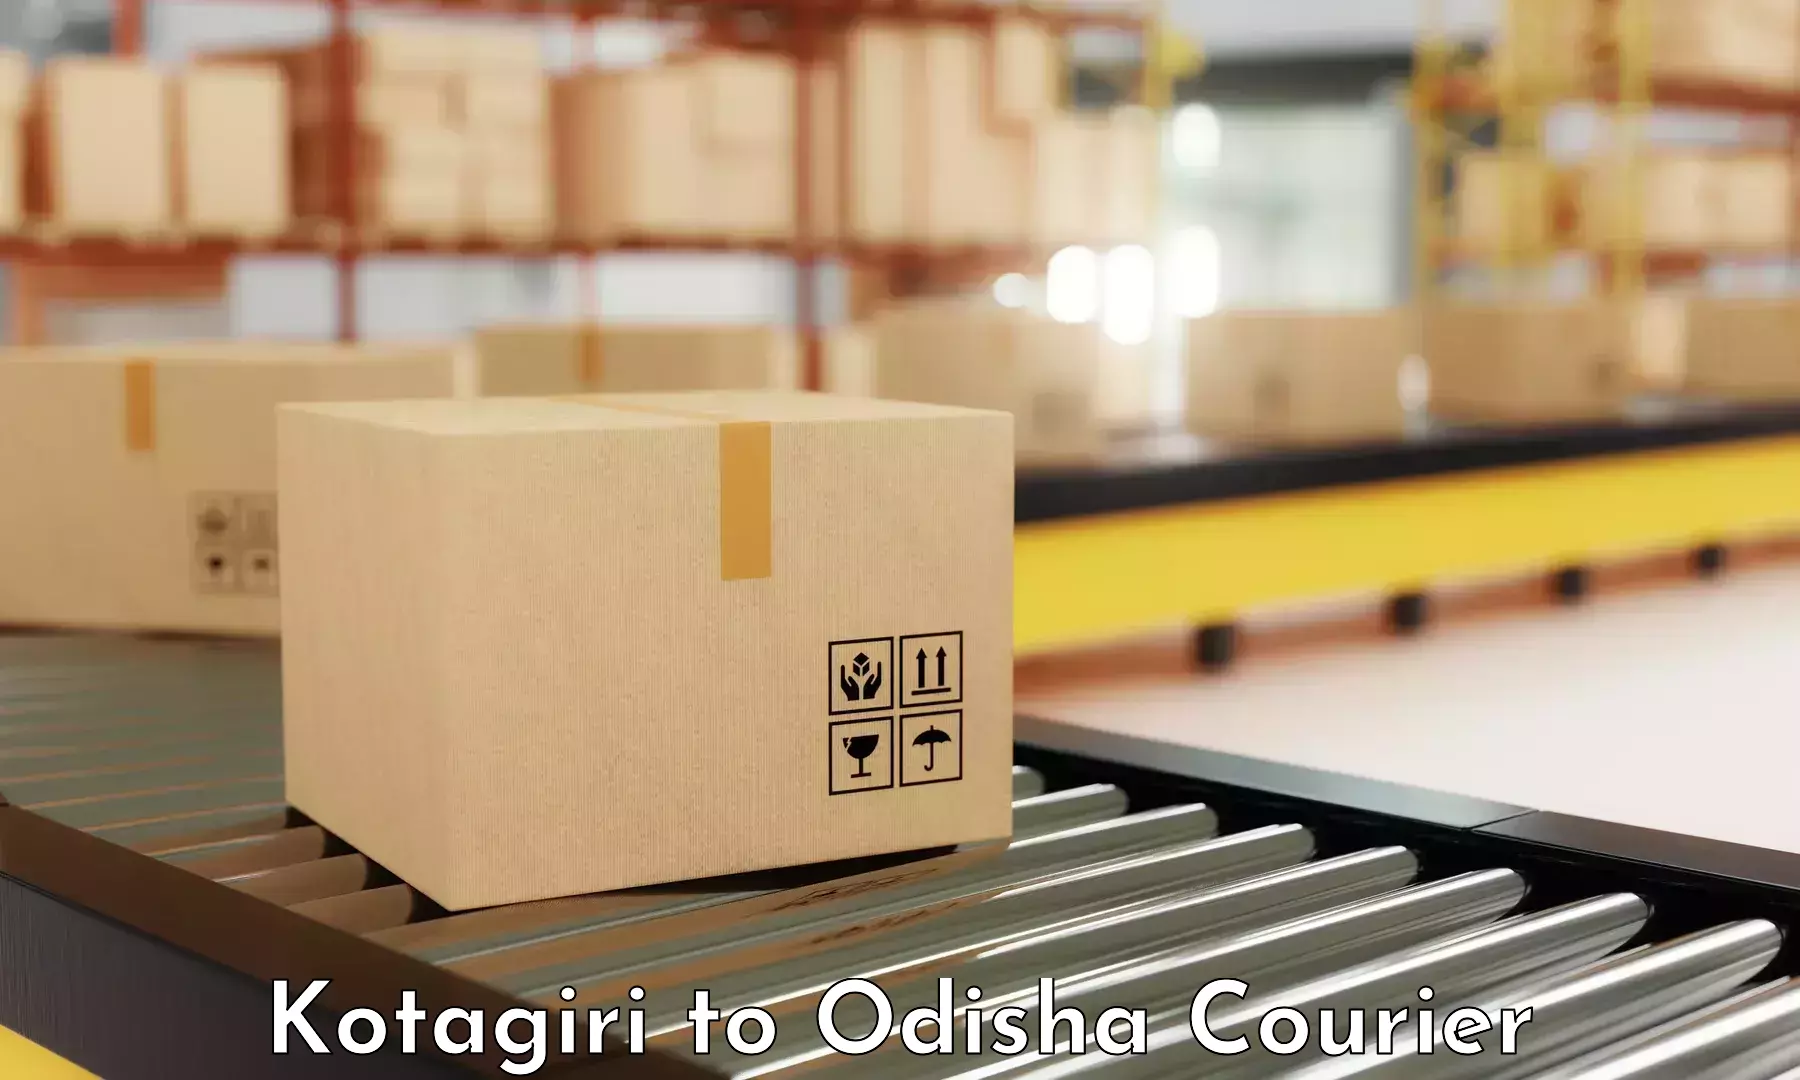 Corporate courier solutions in Kotagiri to Badagada